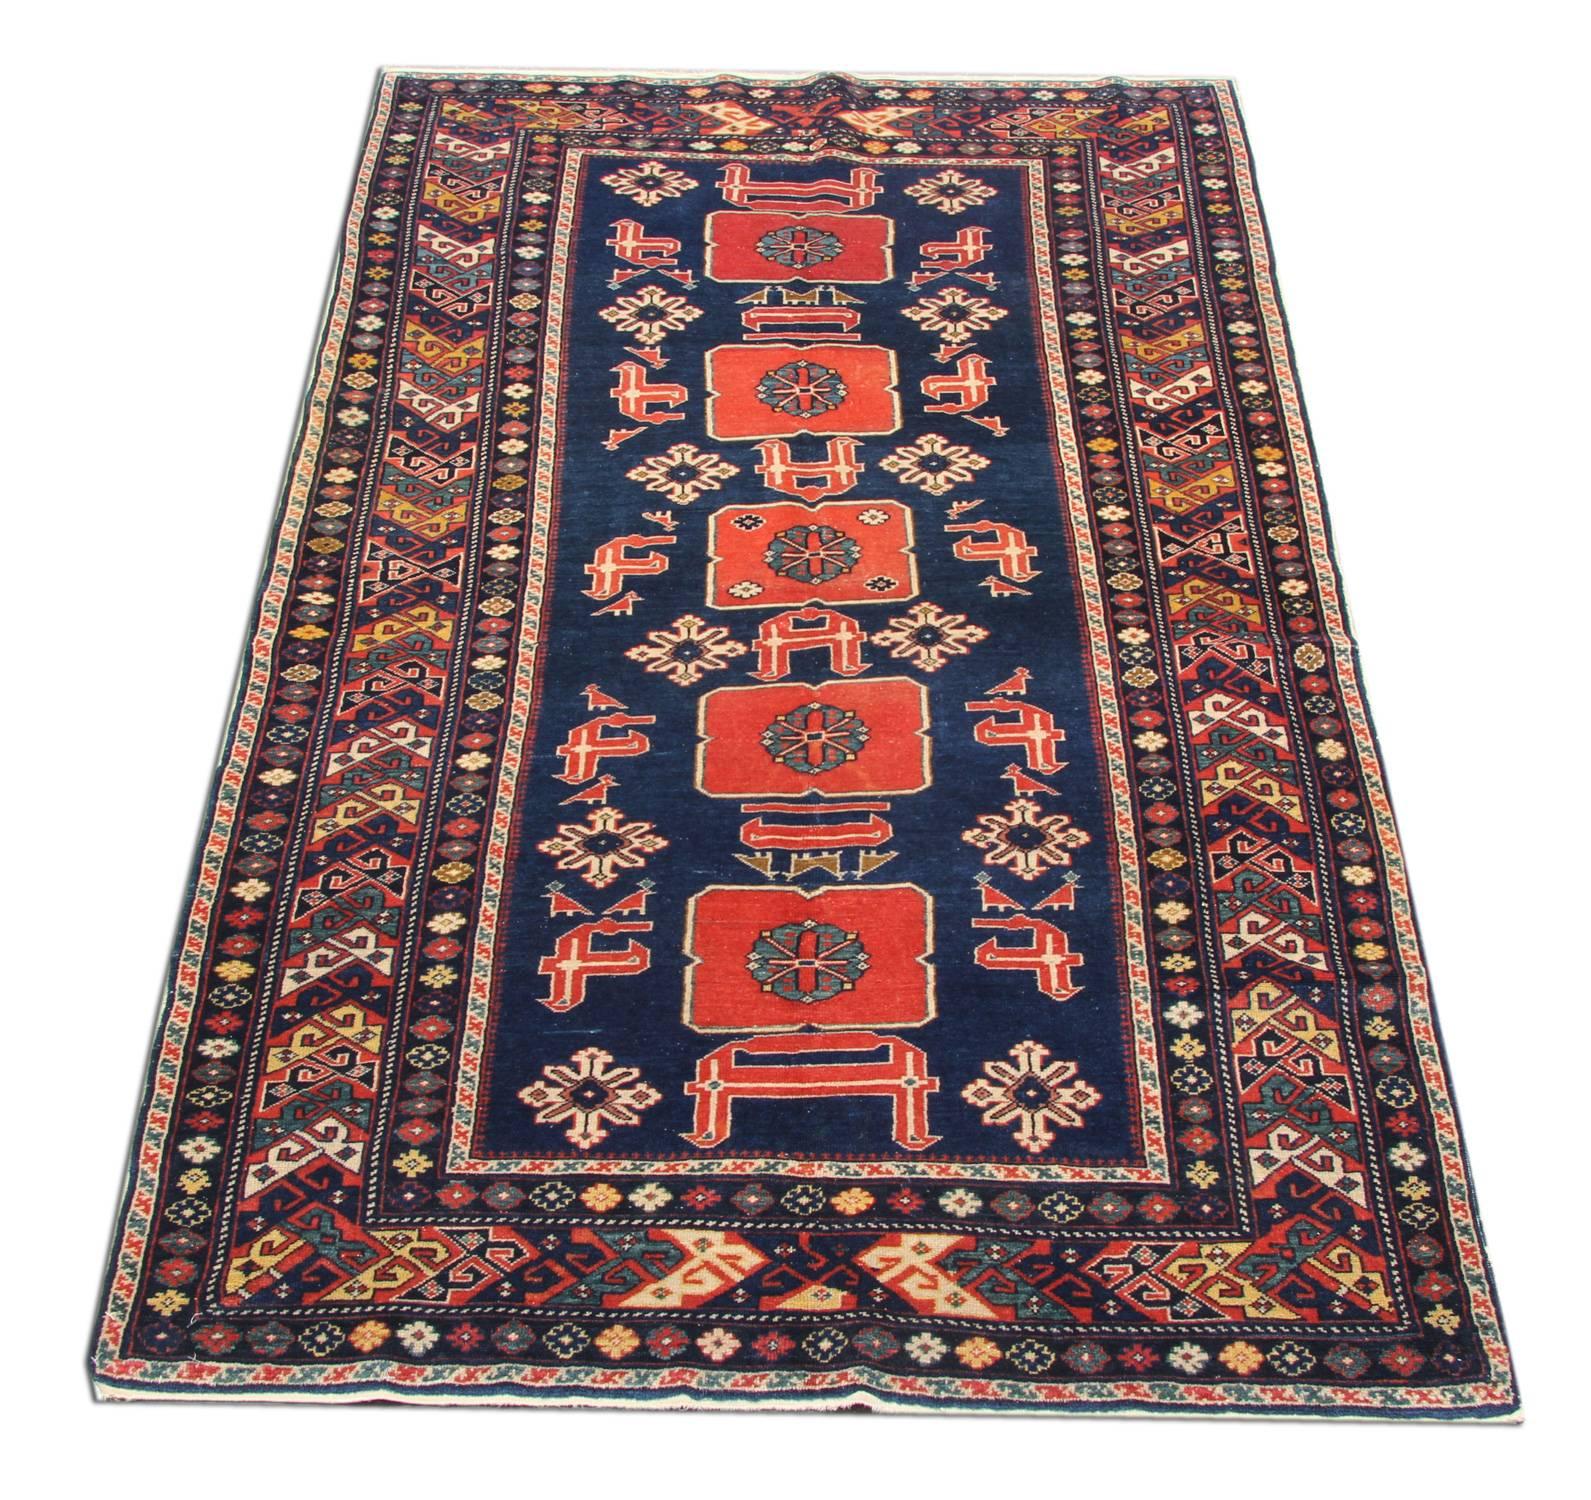 Dieser handgefertigte antike Kaukasus-Teppich ist ein phänomenales und wahrhaft archetypisches Beispiel für regionale Orientteppiche aus dem aserbaidschanischen Dorf Karakaschly. Diese lokale Variante des Afshan-Musters zeichnet sich durch